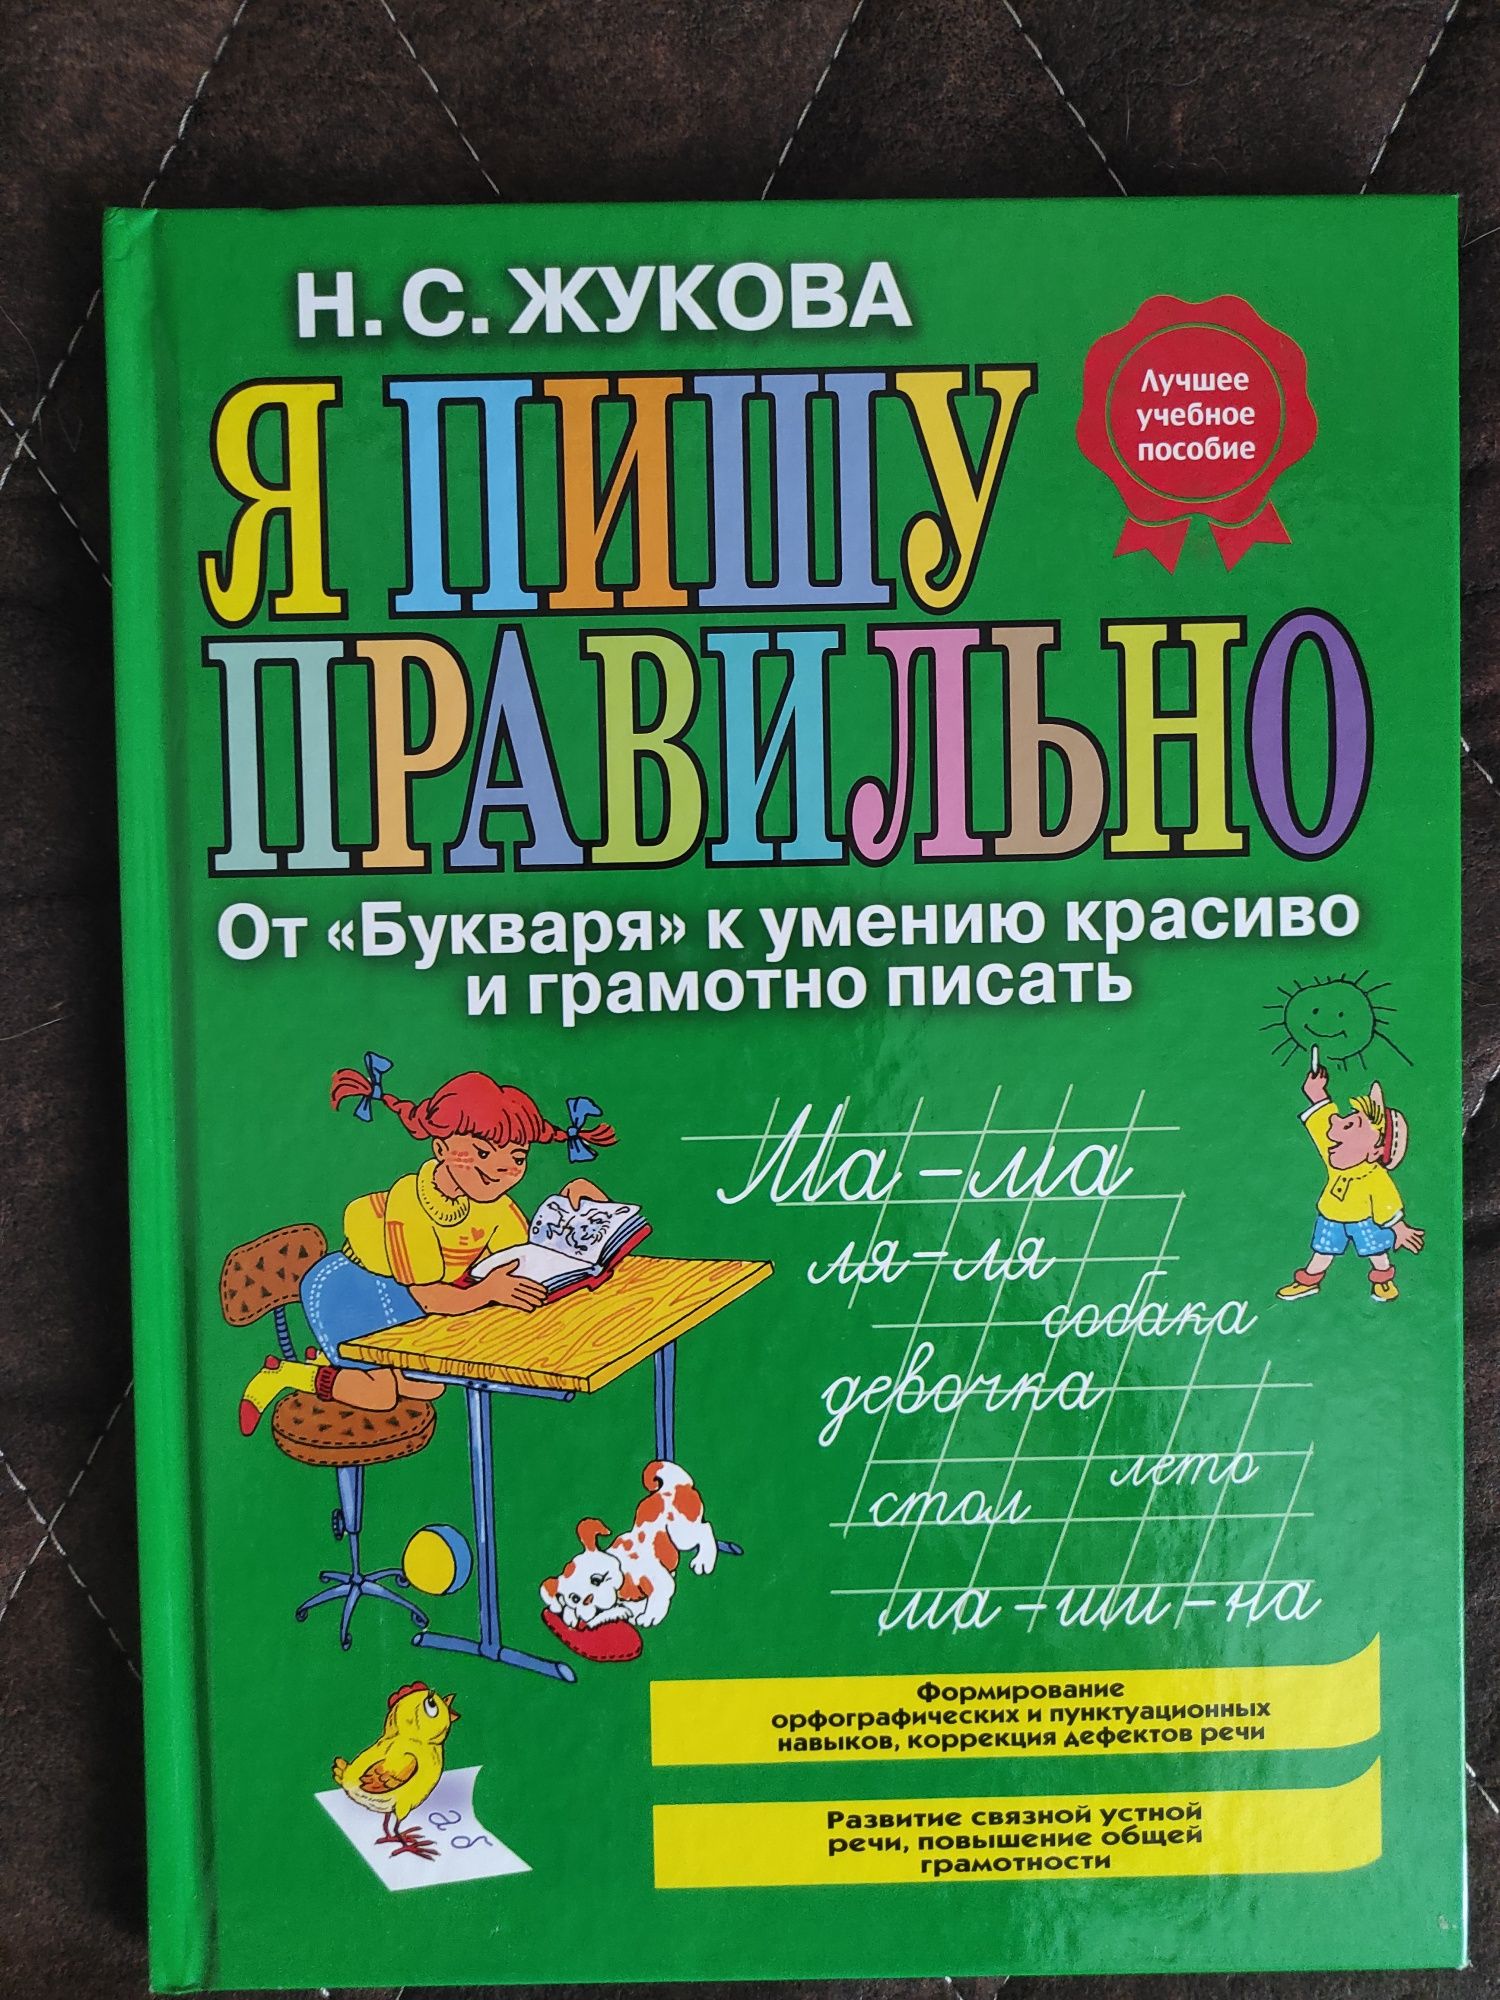 Книга Н.Жуковой "Логопедия"